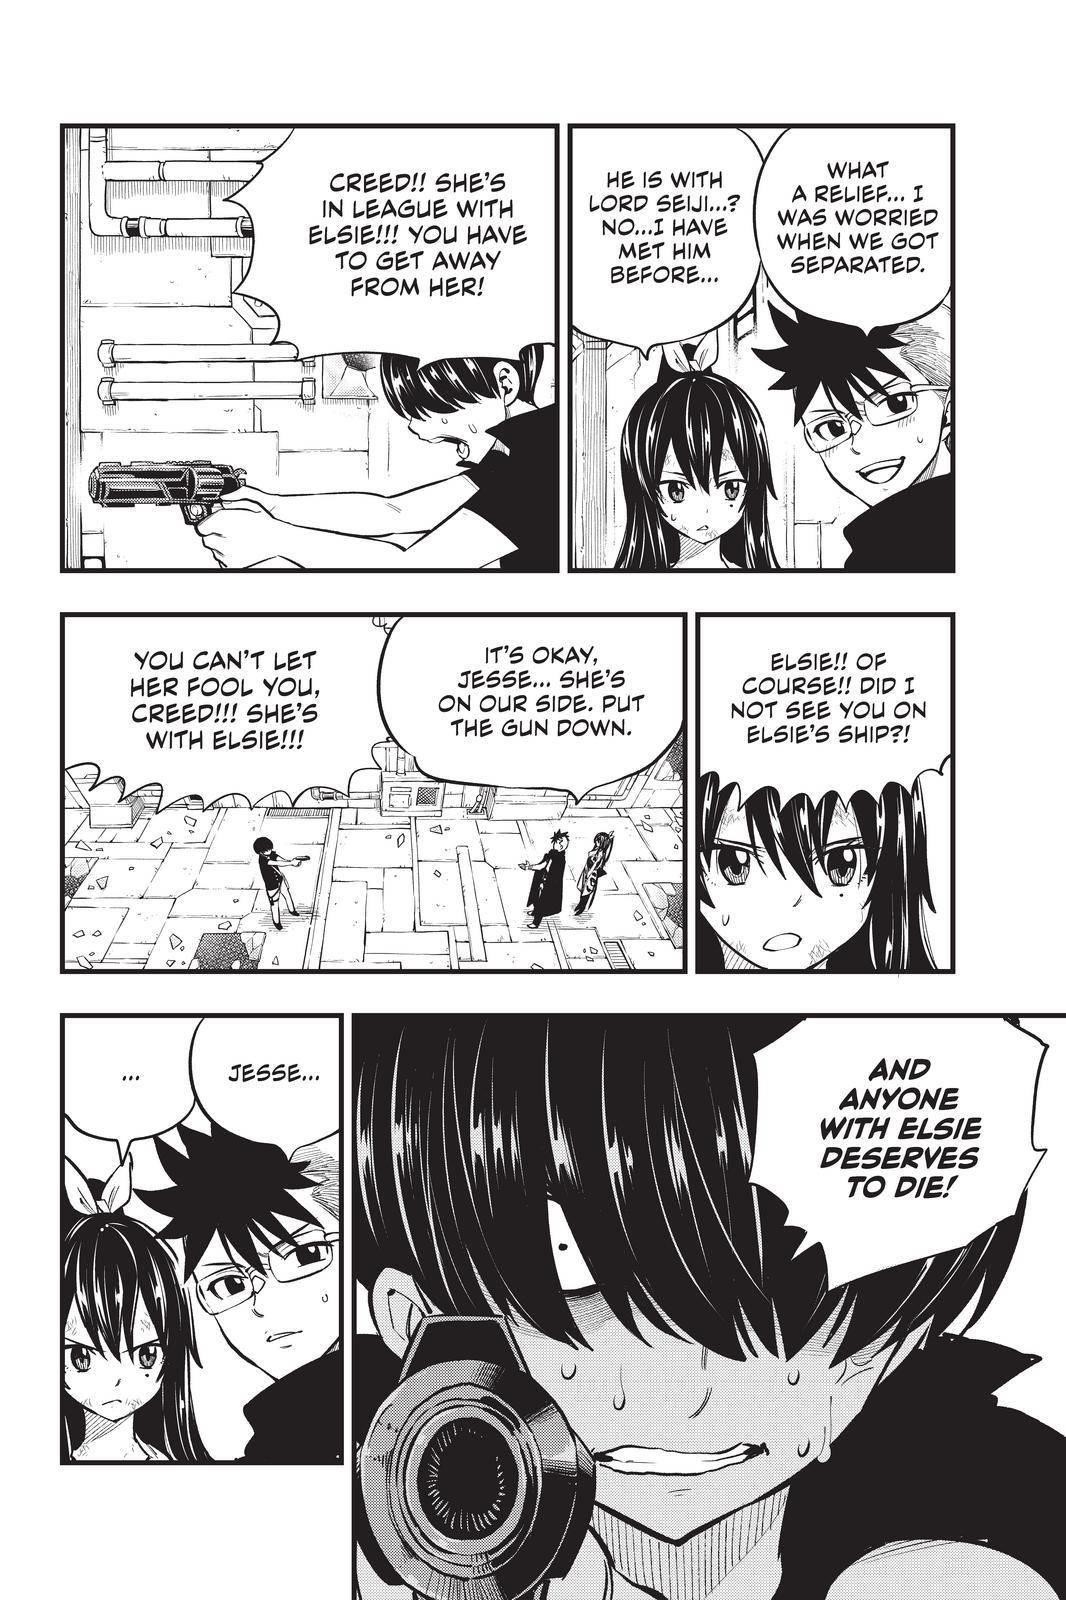 Читать мангу нулевая. Манга с нуля. Zero in Manga. Манга нулевая сума. Фото с нулём Манга.